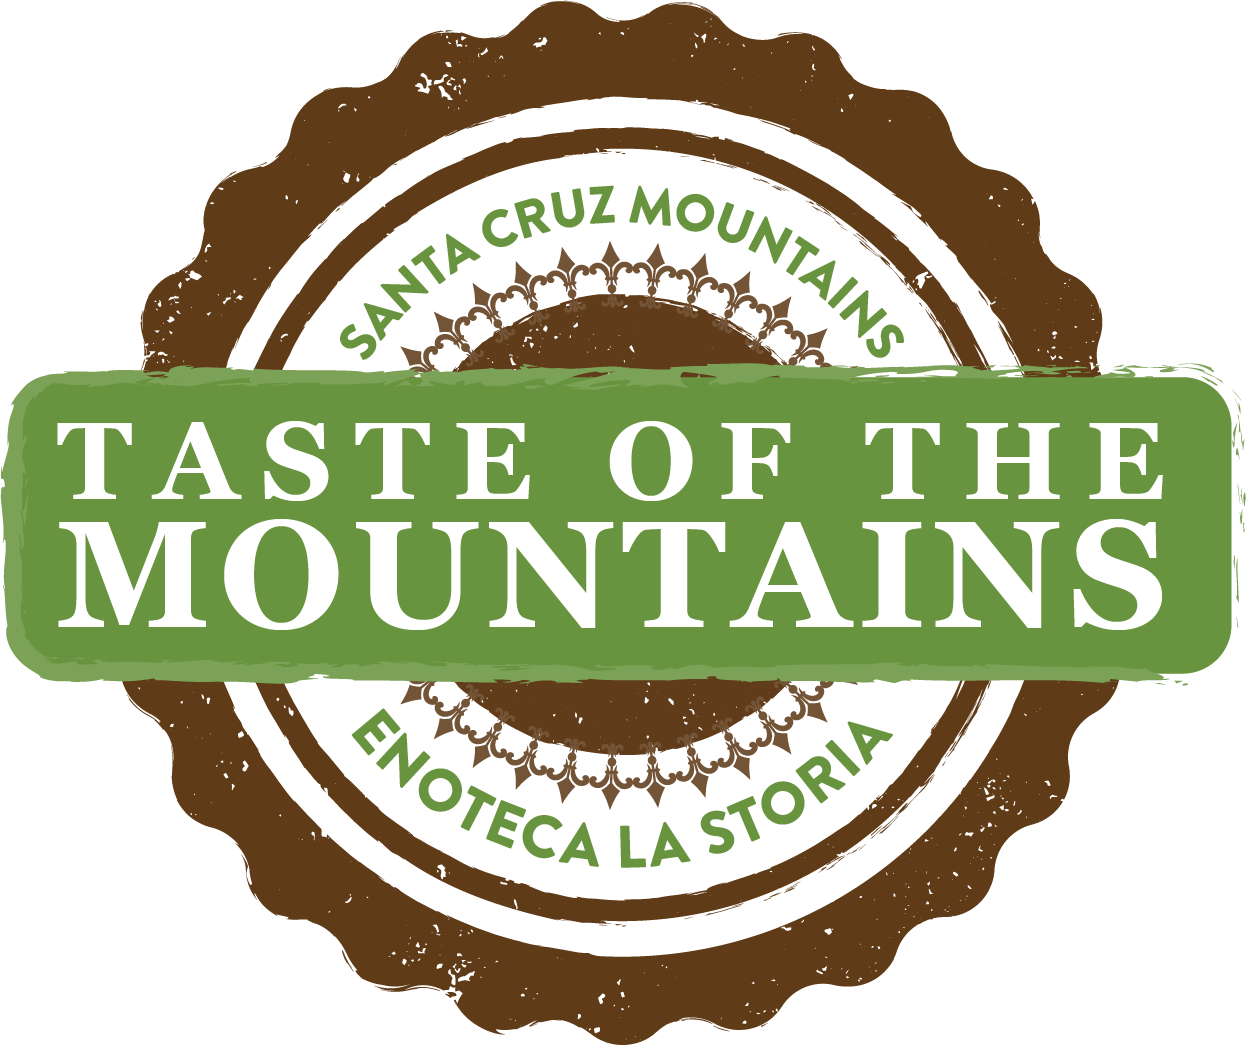 Taste of the Mountains Enoteca La Storia